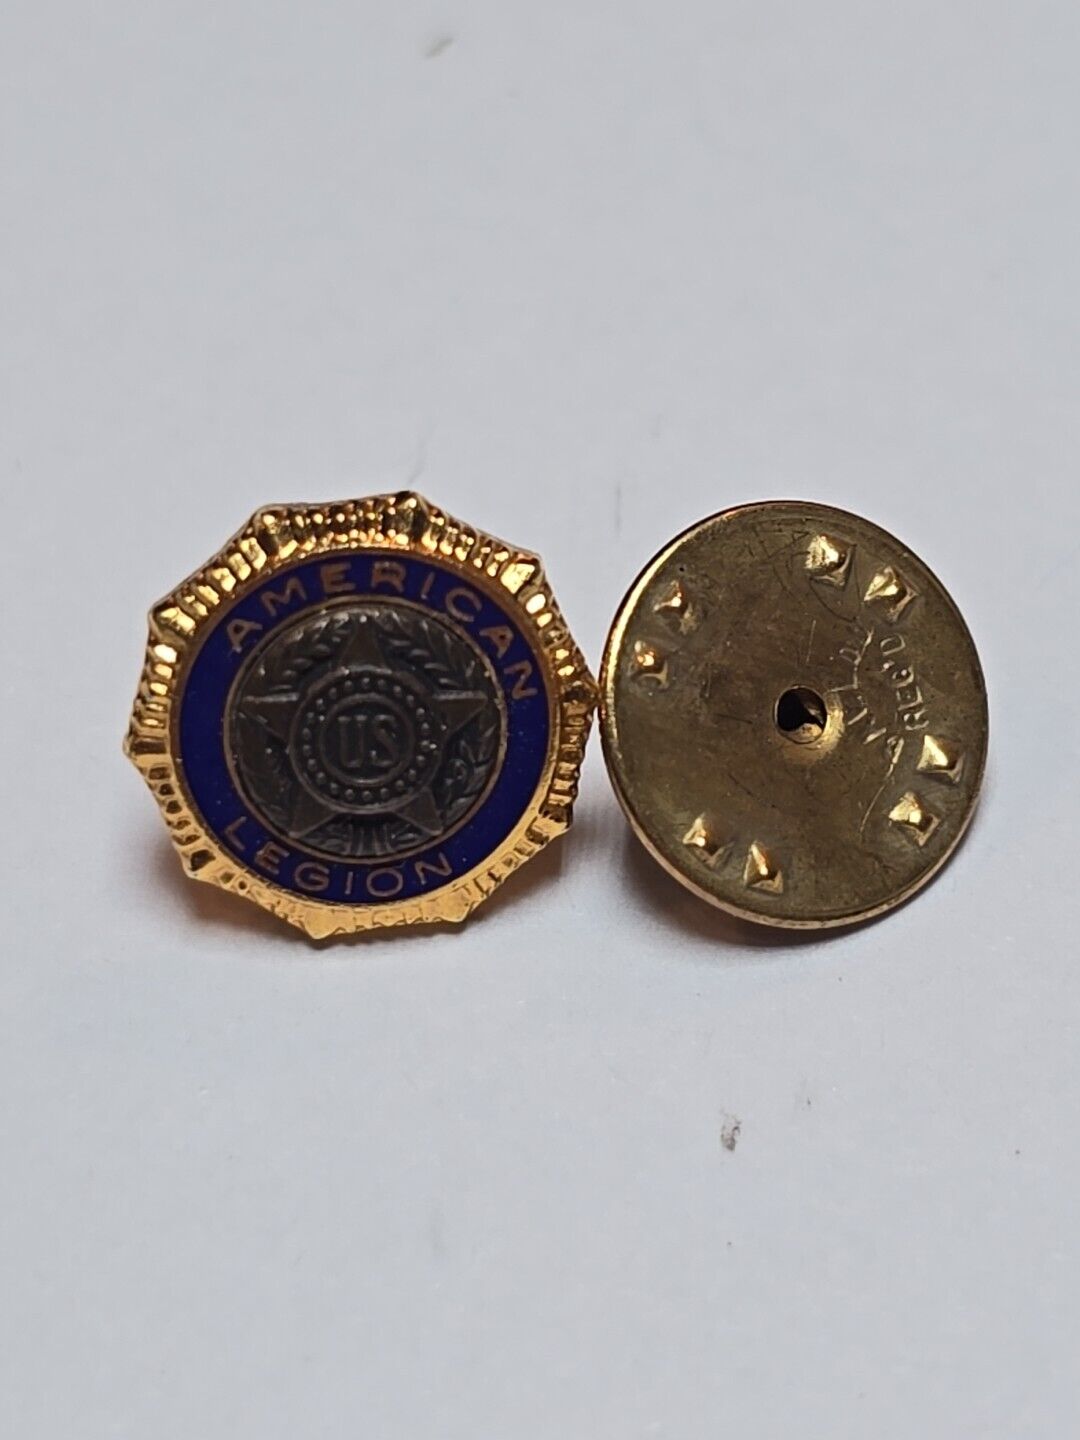 Vintage Official US American Legion Emblem Tie Tack Lapel Pin PAT. DE. 54296